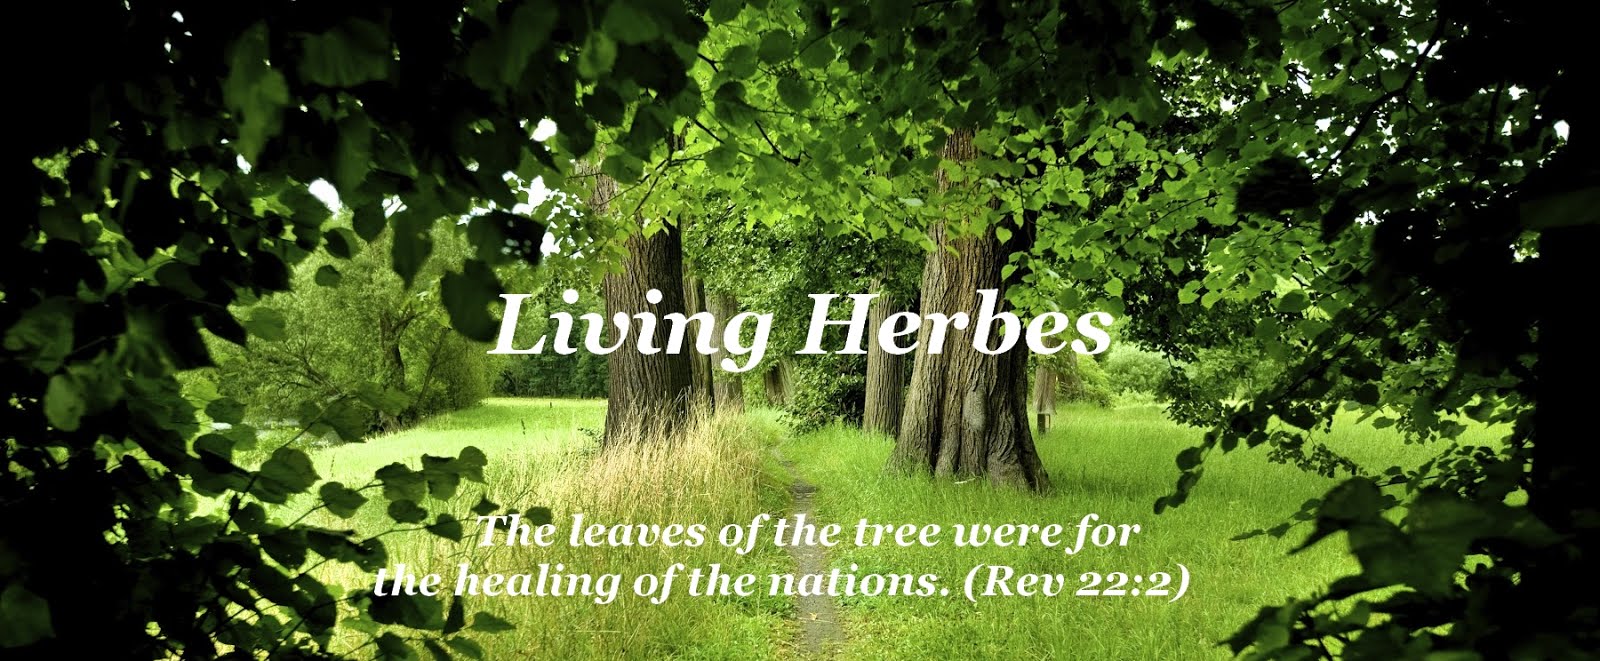 Living Herbes